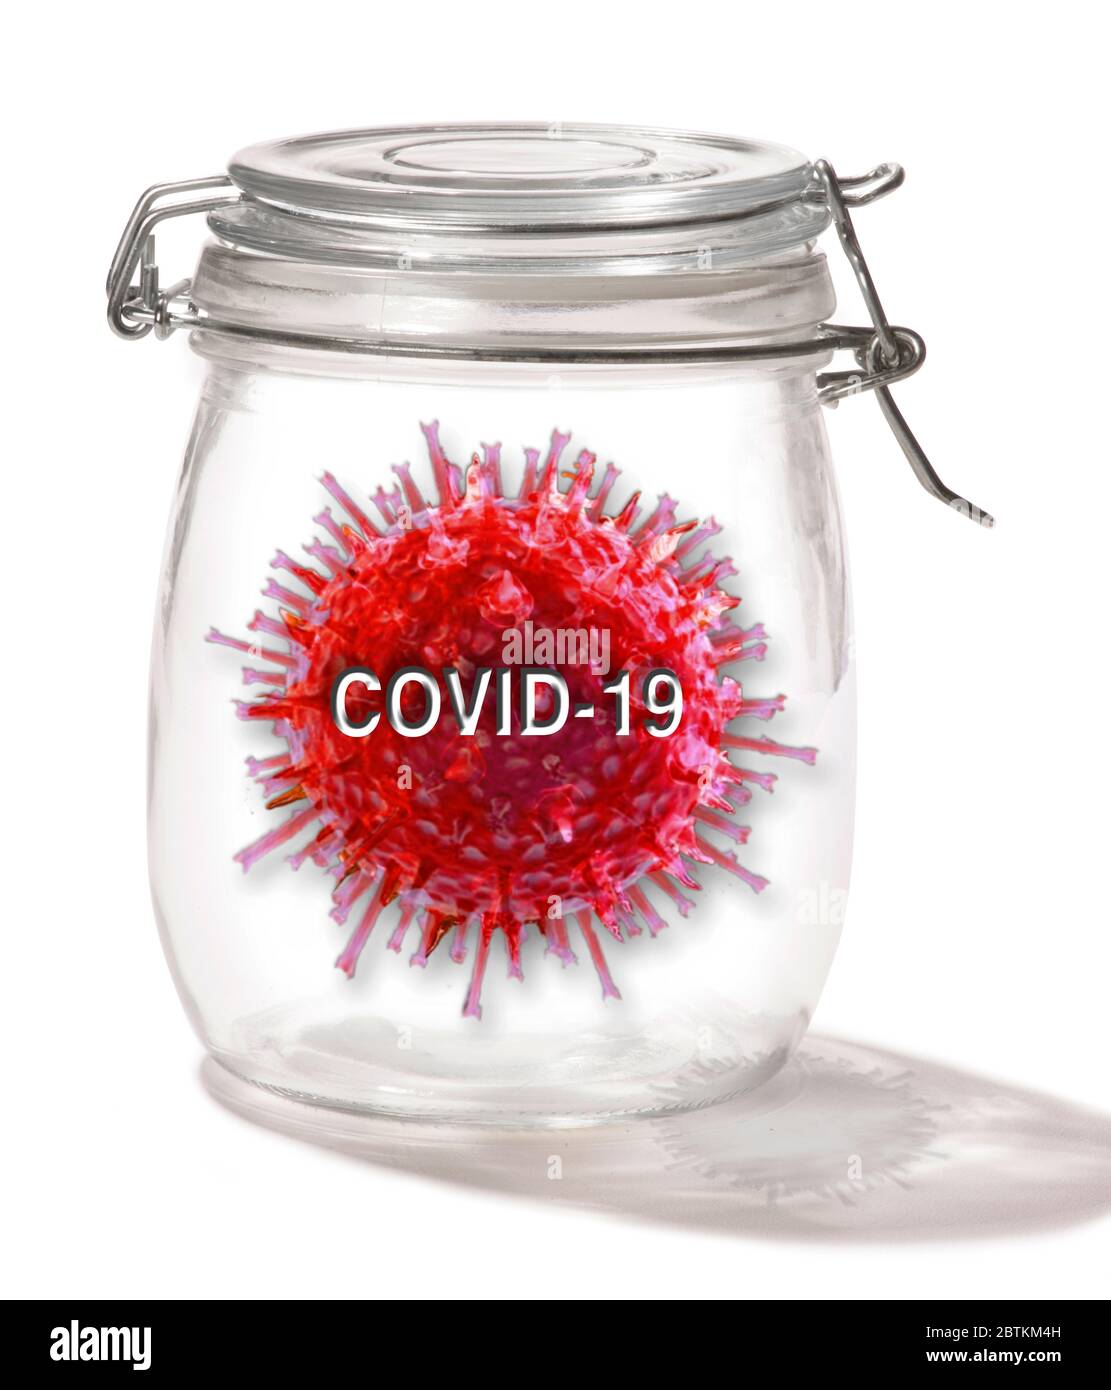 Pandémie COVID-19 dans un pot en verre. Banque D'Images